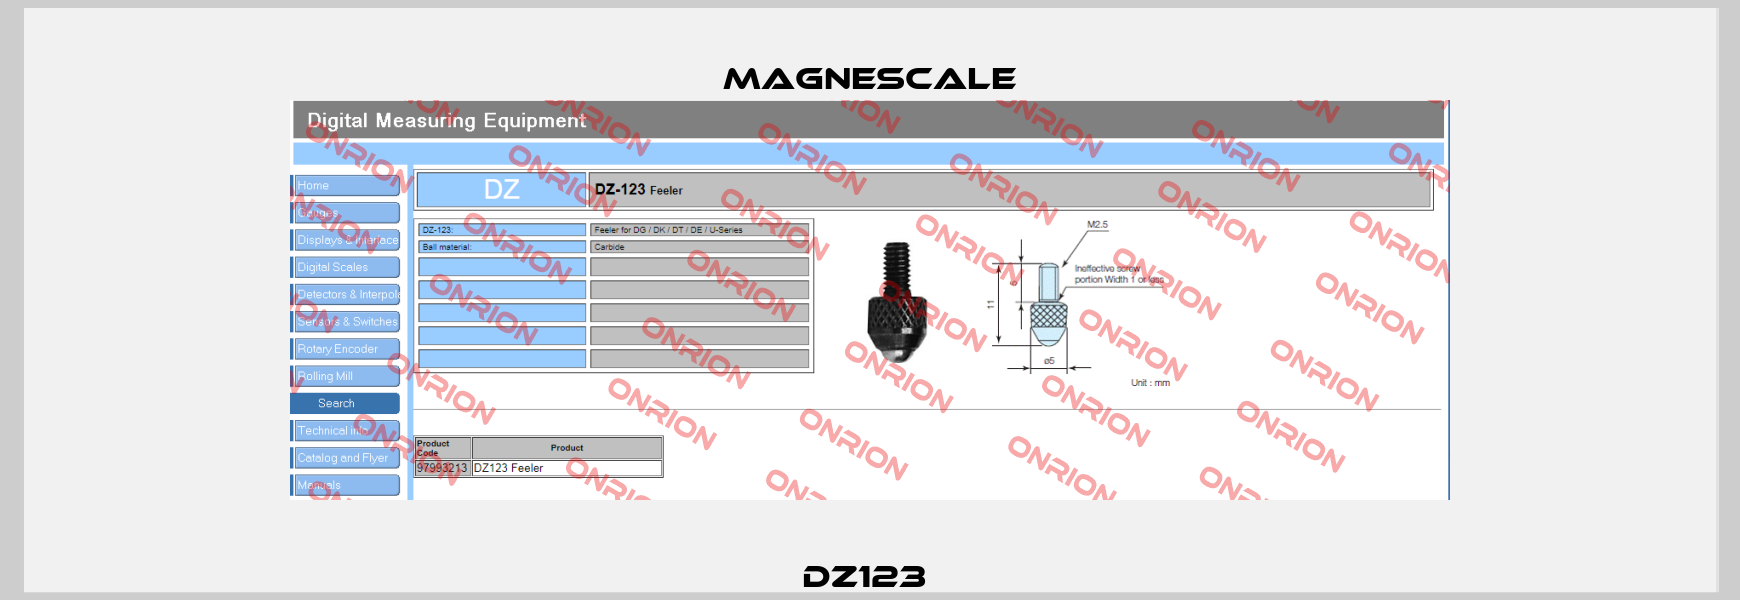 DZ123  Magnescale